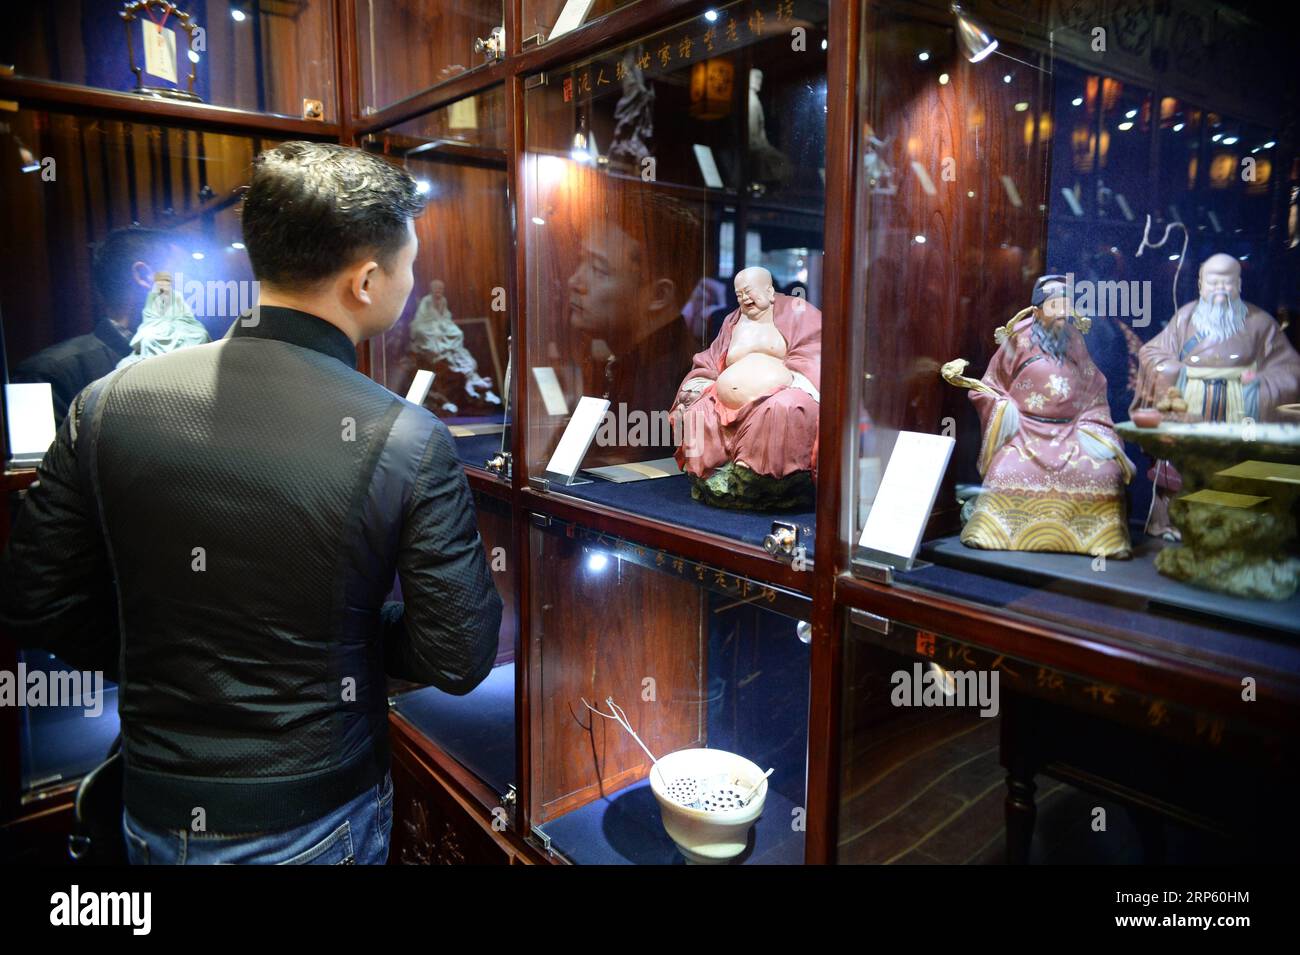 (181229) -- PÉKIN, 29 déc. 2018 (Xinhua) -- Un client regarde les figurines de la galerie d'art Clay Figure Zhang à Tianjin, dans le nord de la Chine, 28 déc. 2018. Figure d'argile Zhang est un nom familier de l'art populaire traditionnel en Chine, et une telle œuvre a une histoire de près de 200 ans. Zhang Yu, le fabricant de figurines en argile de sixième génération de sa famille, a pris en charge l’entreprise familiale en 1996, alors qu’il n’avait que 18 ans. Au fil du temps, le métier et la marque ont évolué. Au lieu de fabriquer des figurines et de les vendre comme un vendeur de rue, il a embauché des directeurs artistiques pour exploiter et commercialiser le val artistique Banque D'Images